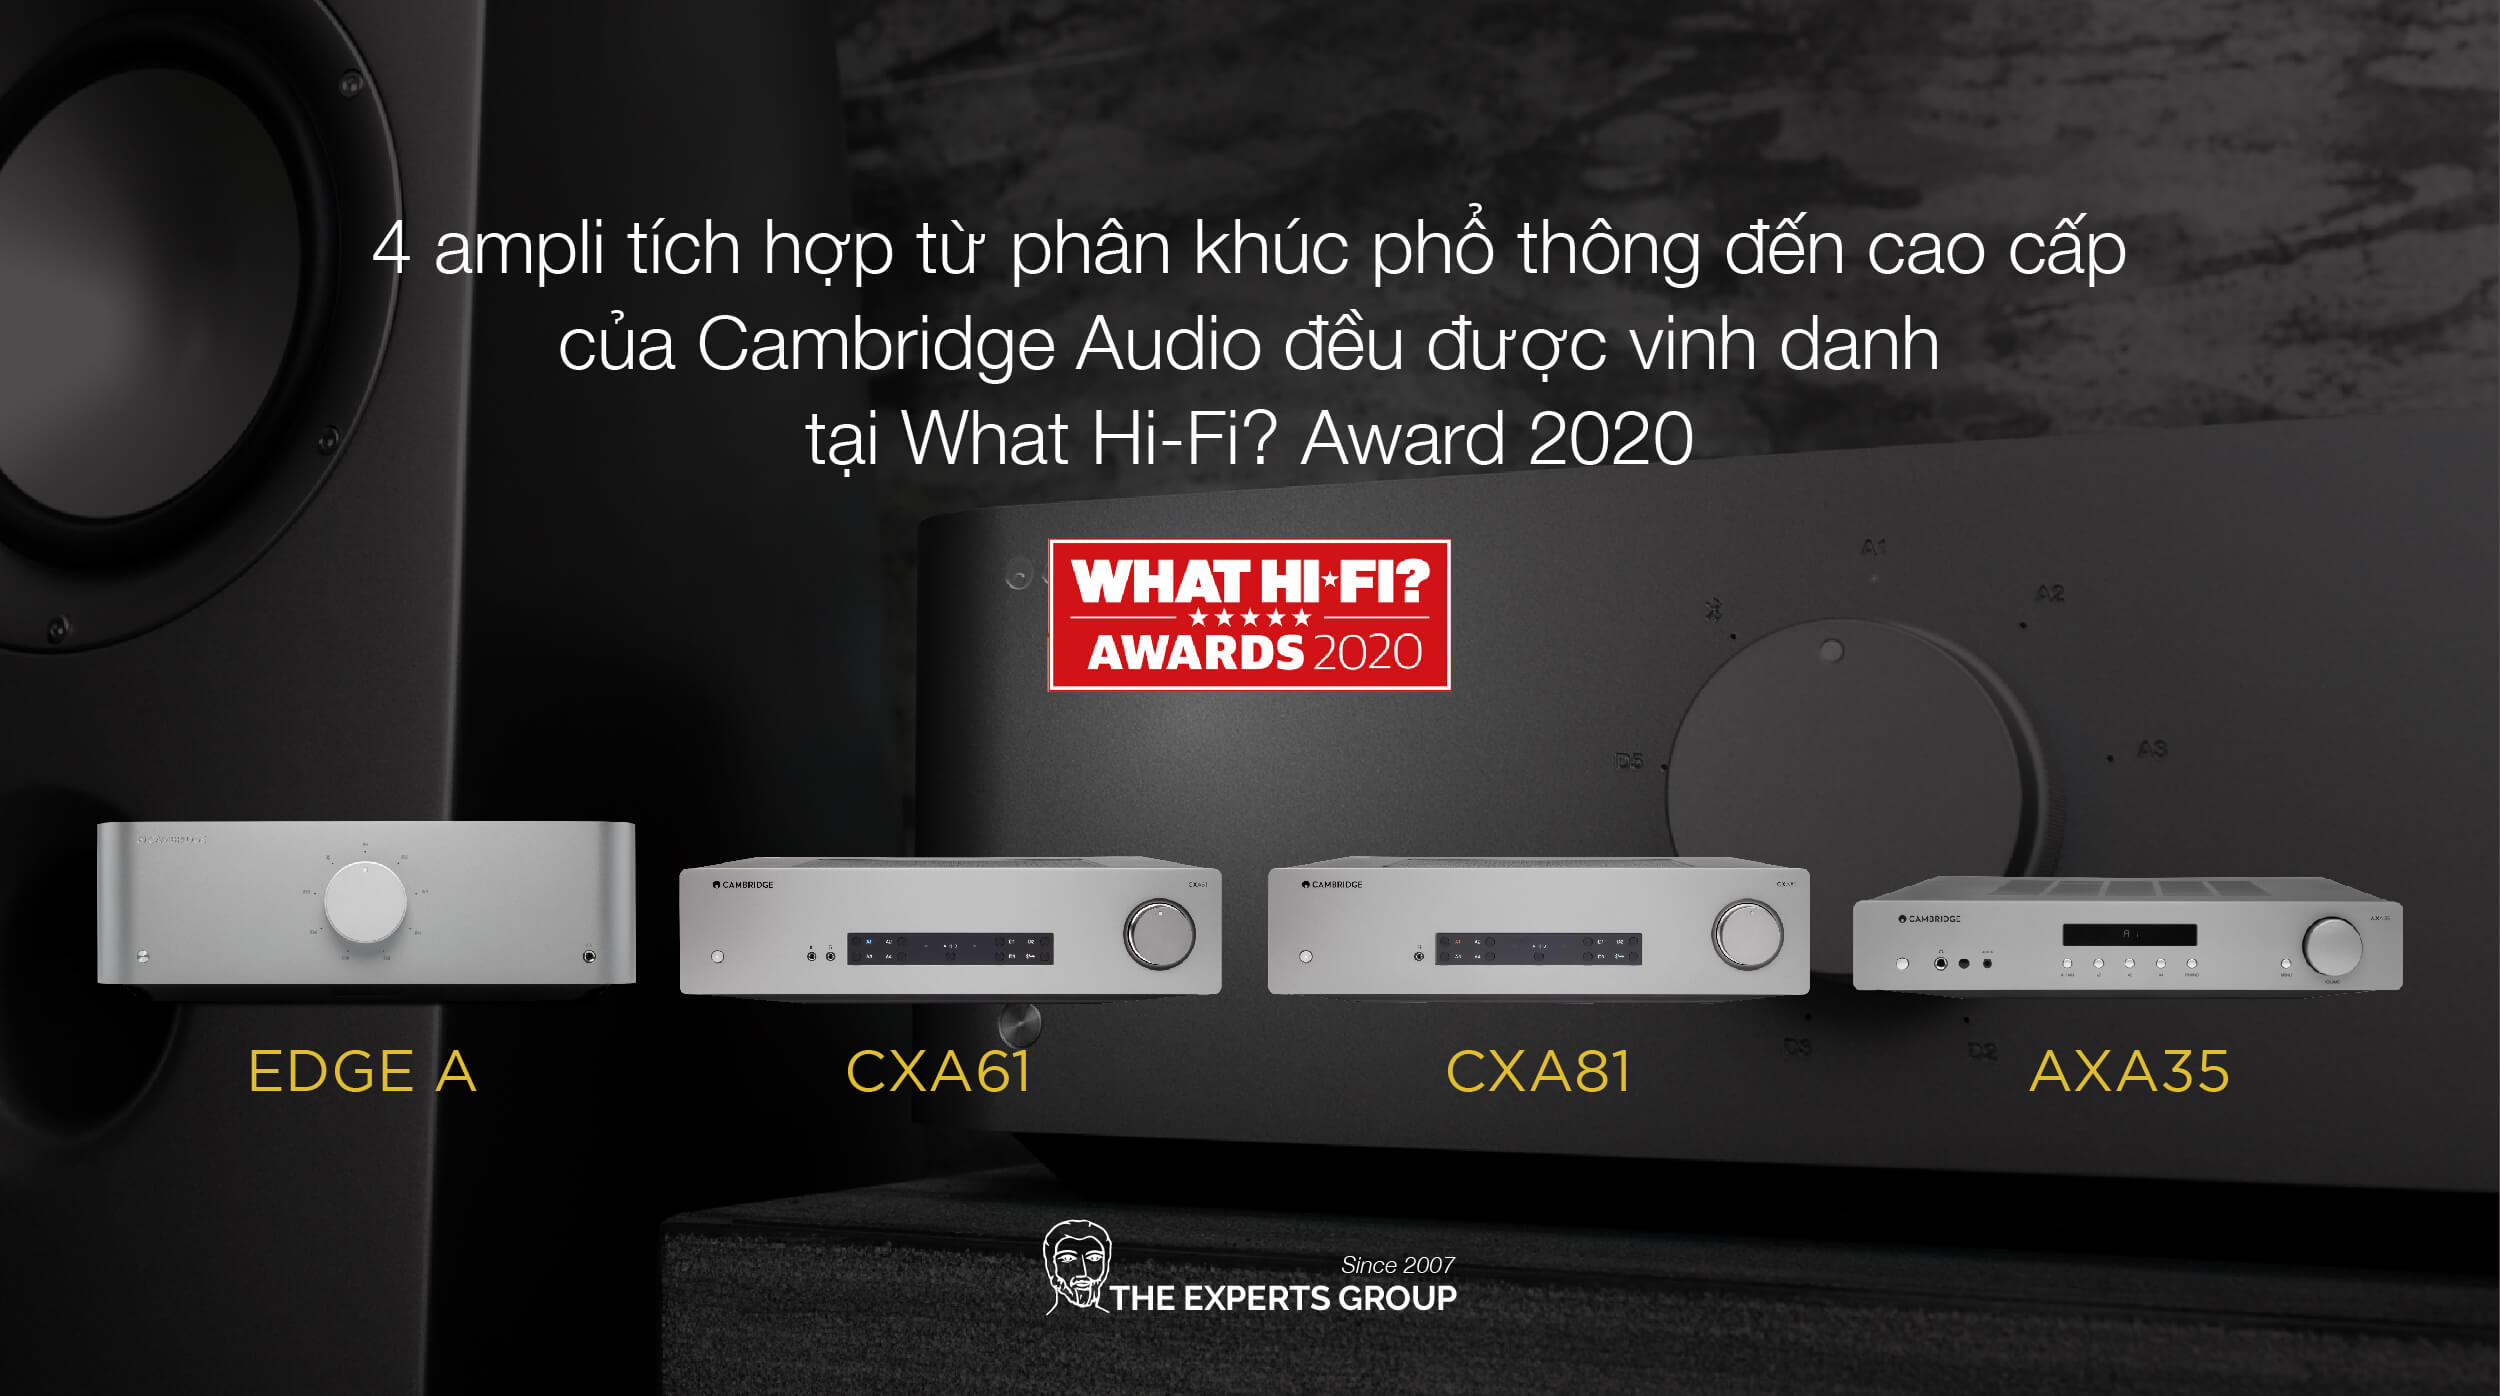 4 ampli tích hợp từ phân khúc phổ thông đến cao cấp của Cambridge Audio đều được vinh danh tại What Hi-Fi? Award 2020